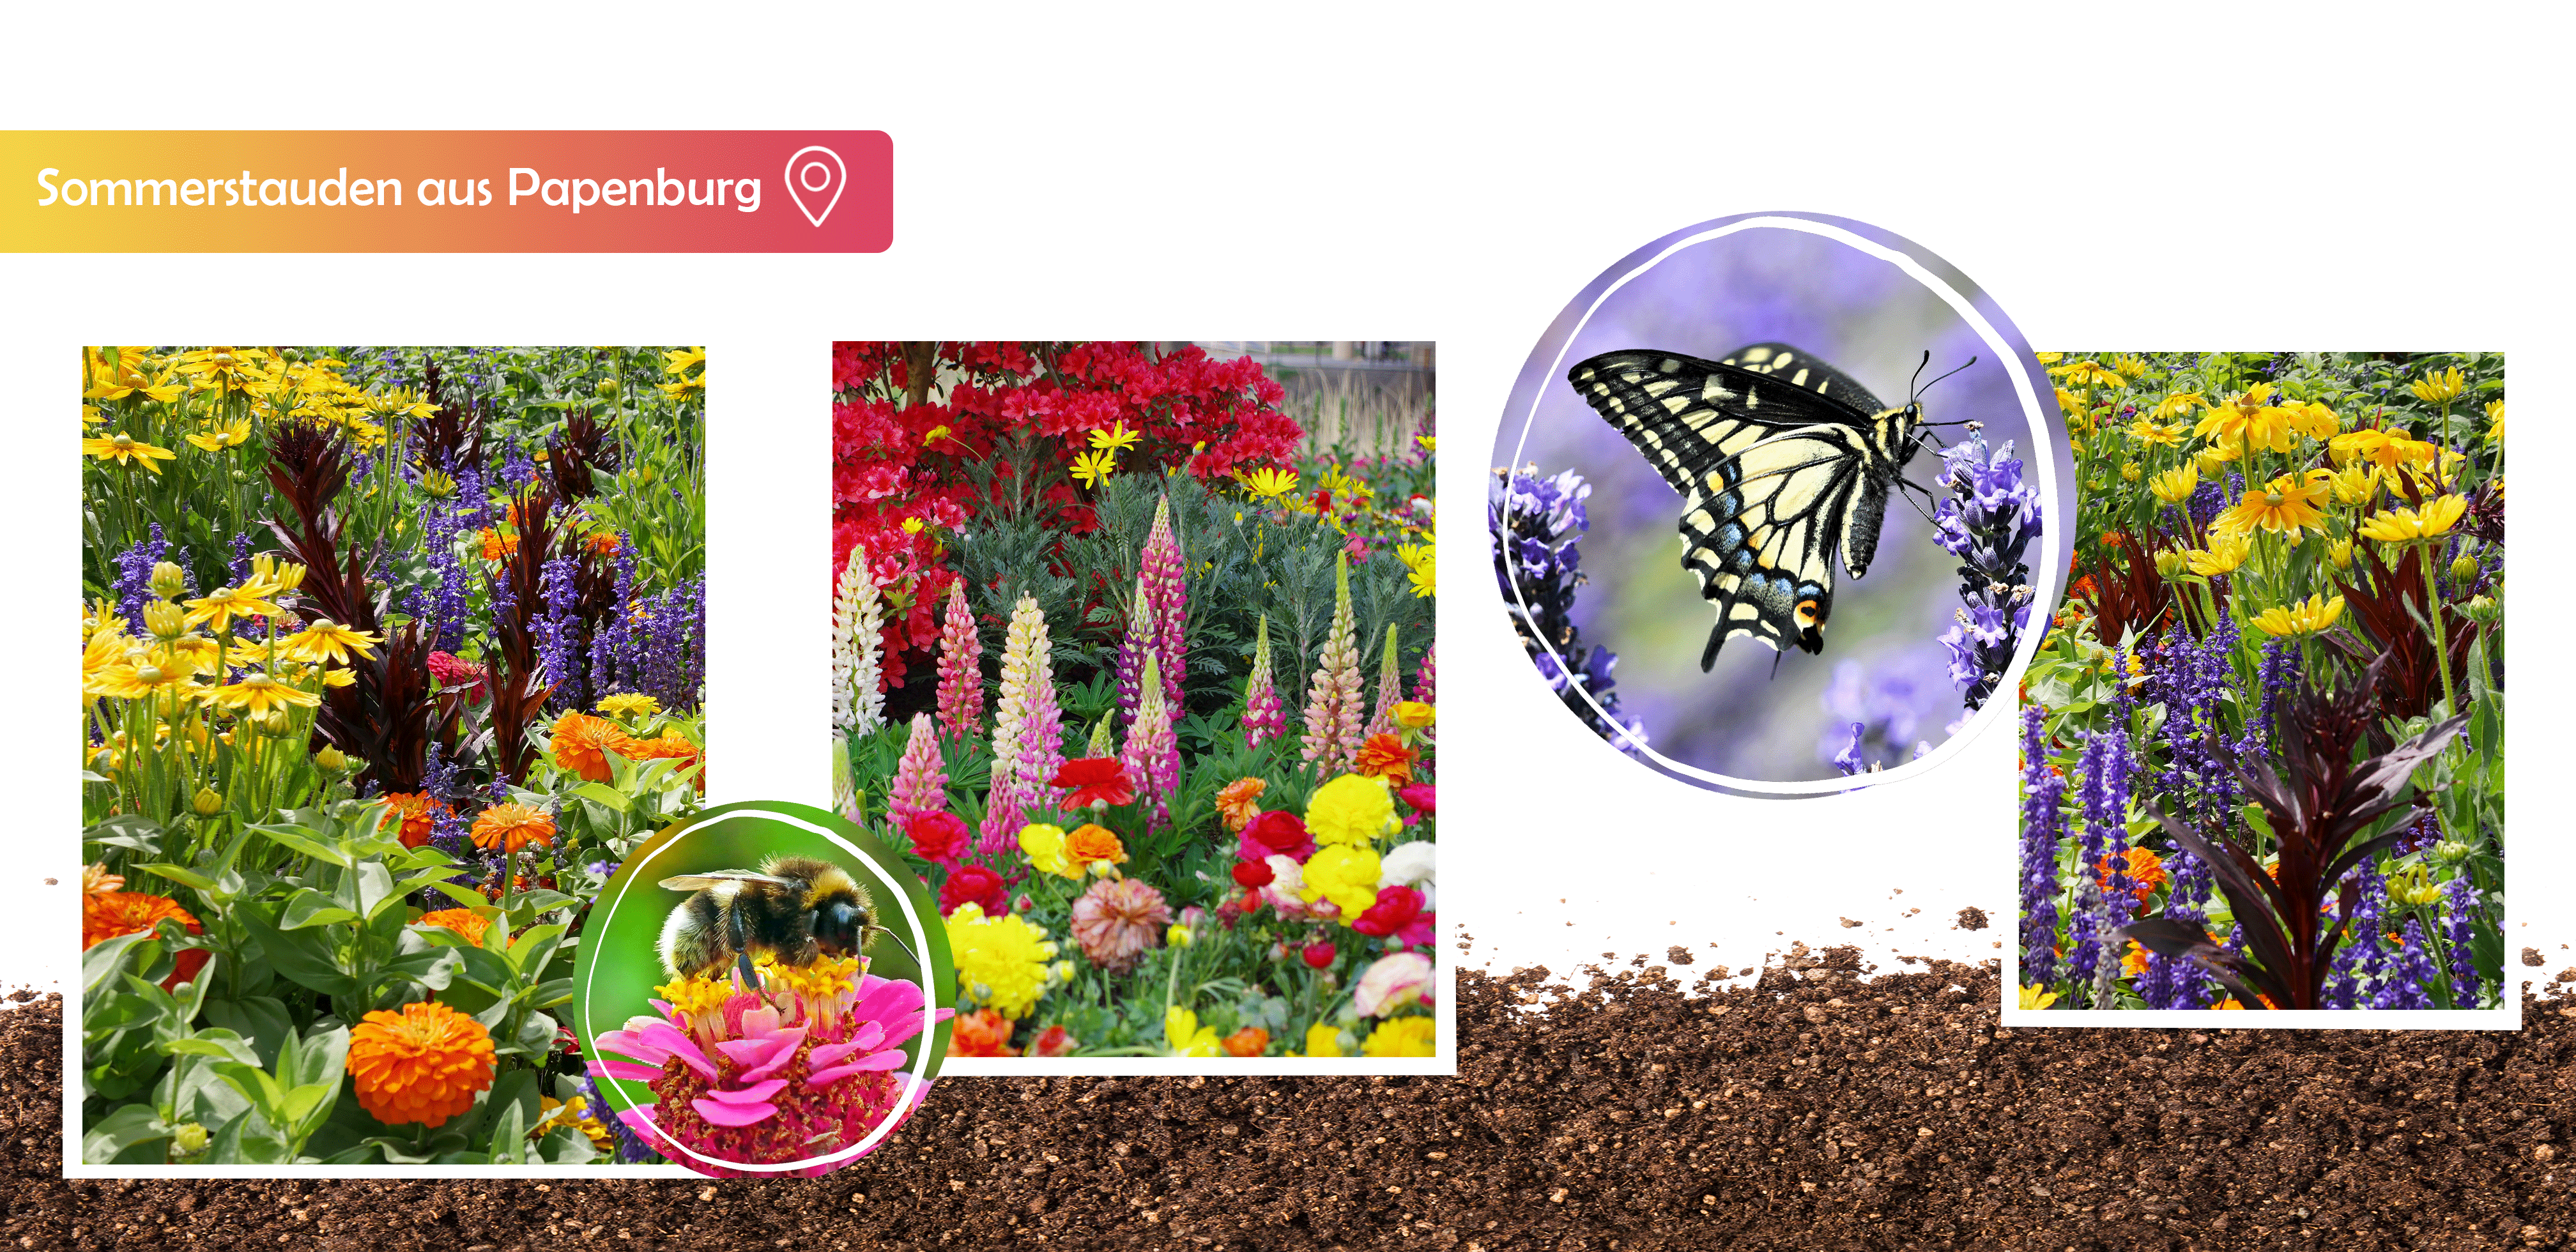 Sommerstauden, Blumen, Bienenfreundliche Pflanzen, Insektenfreundlich, Sommerblumen, Gartenbauzentrale, GBZ, GBZ Papenburg, Papenburg